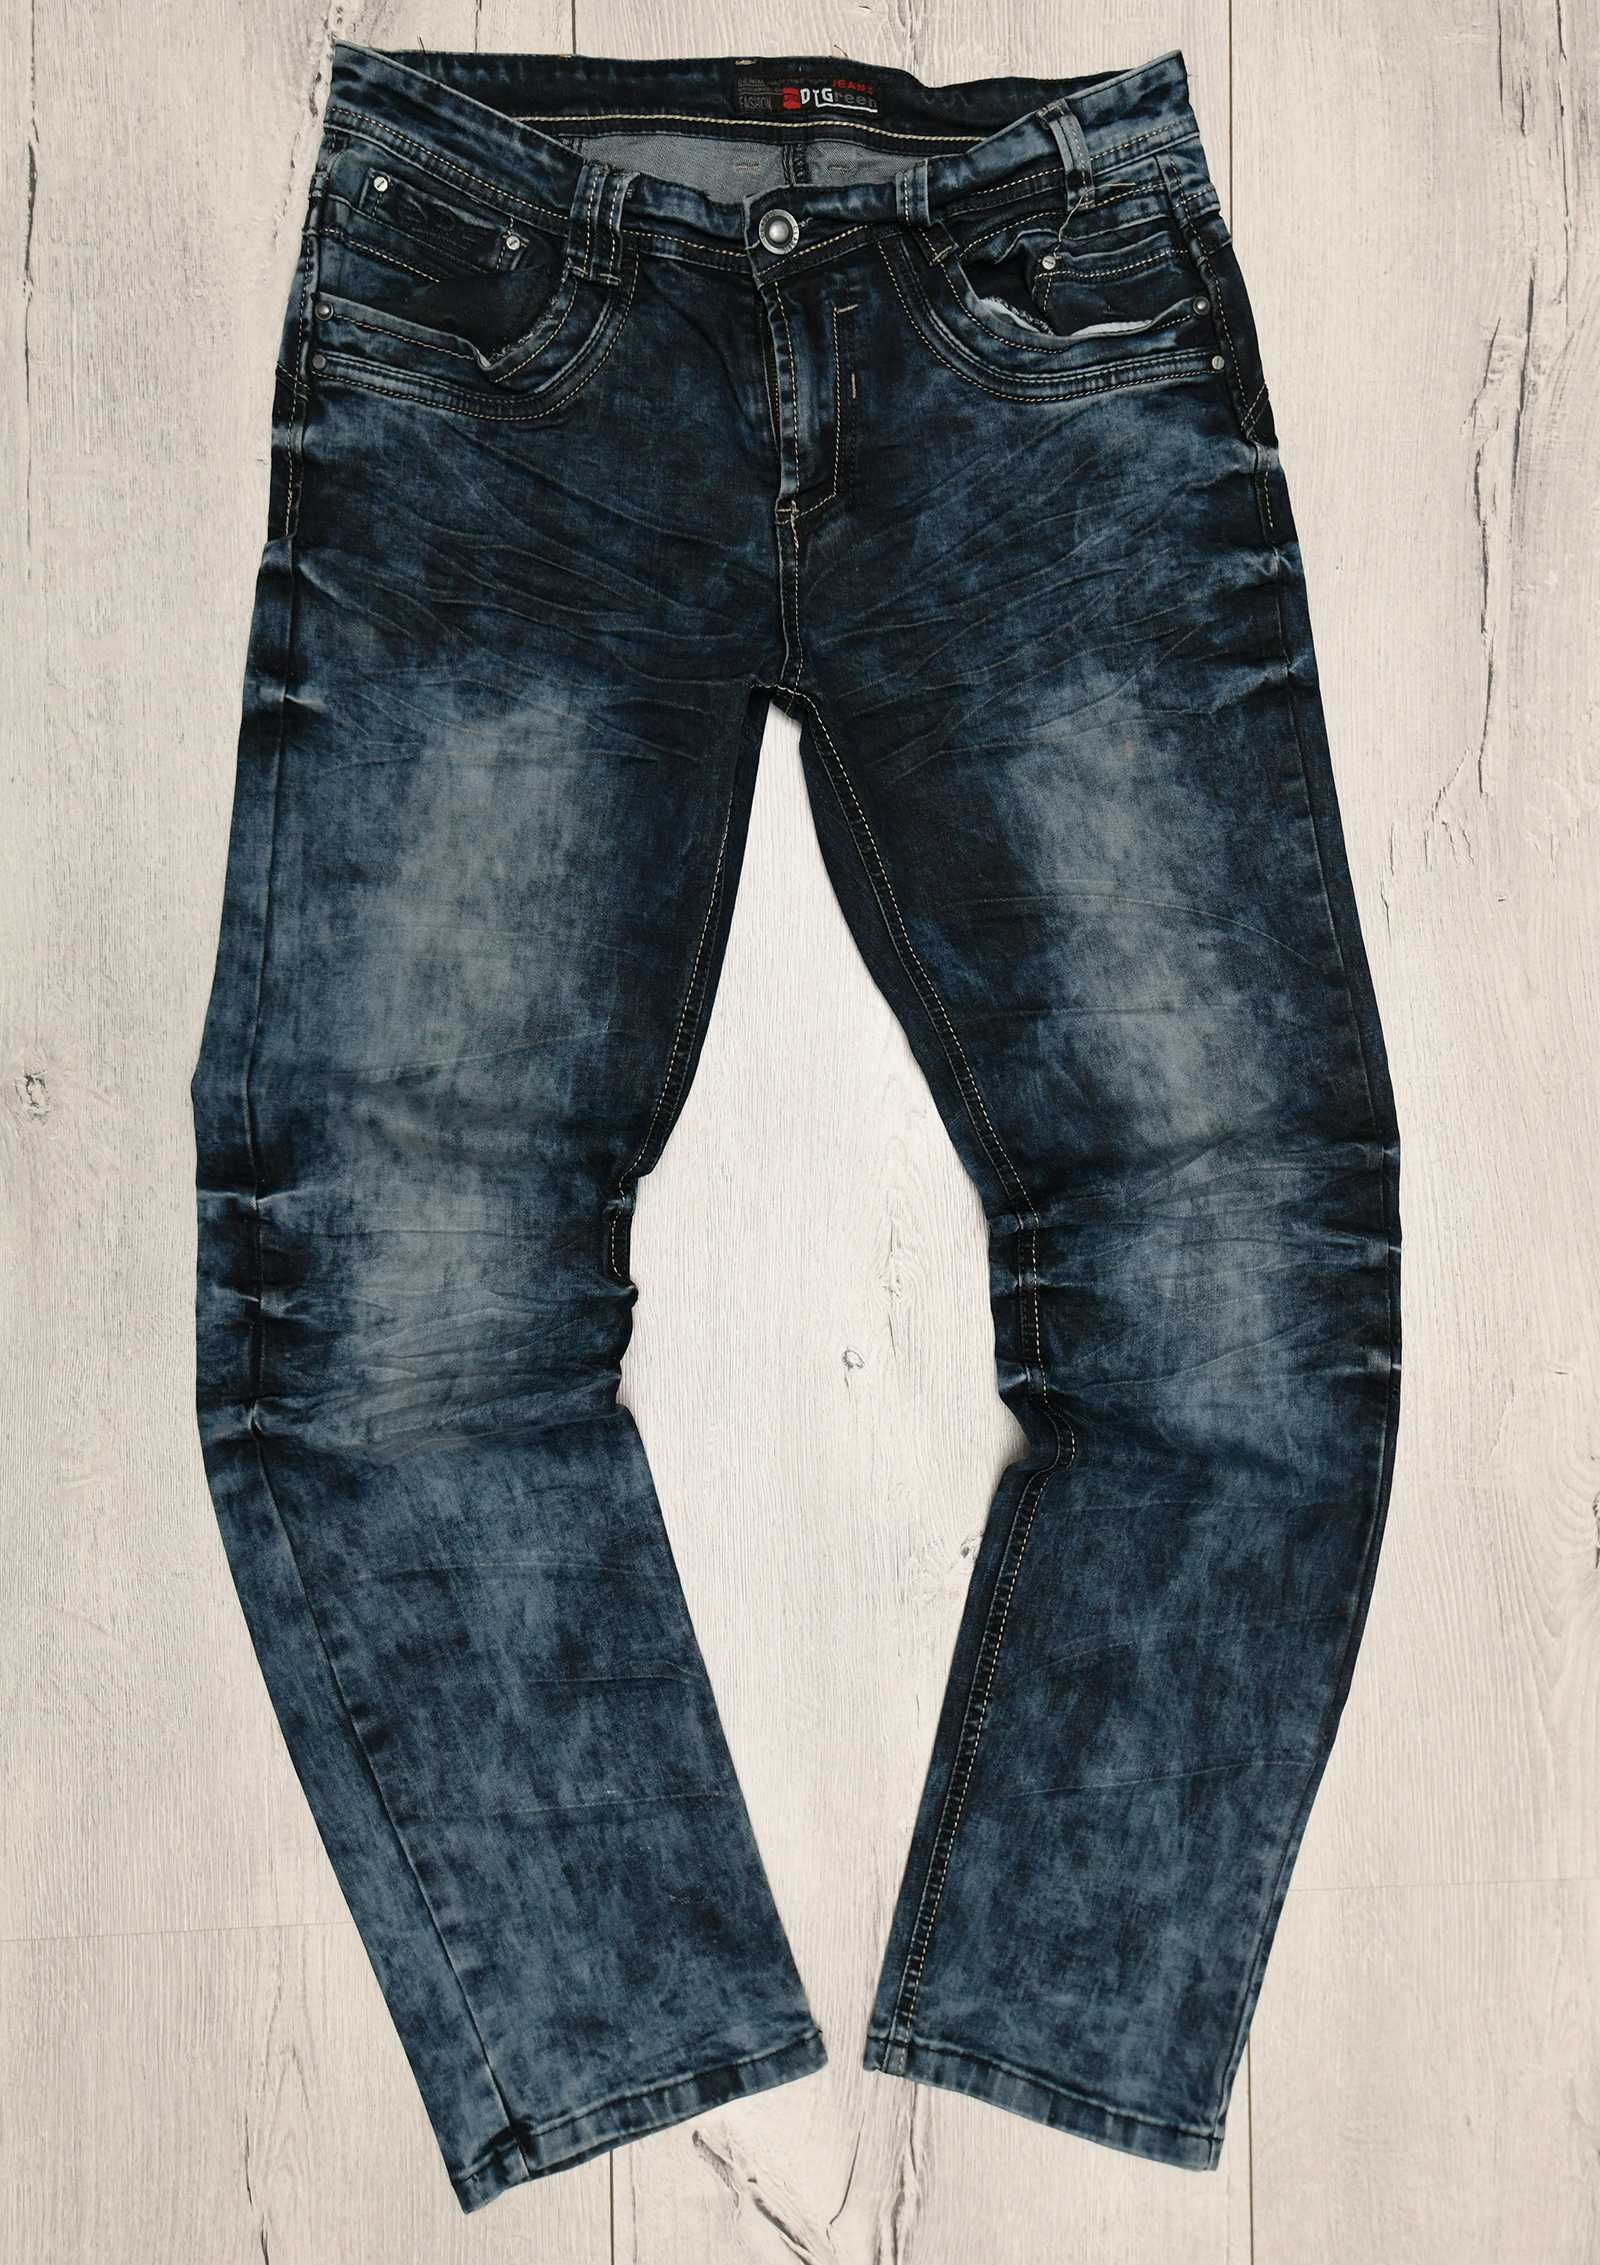 Spodnie jeansowe firmy DTG Jeans r.33, Piekny wzor i elastyczne